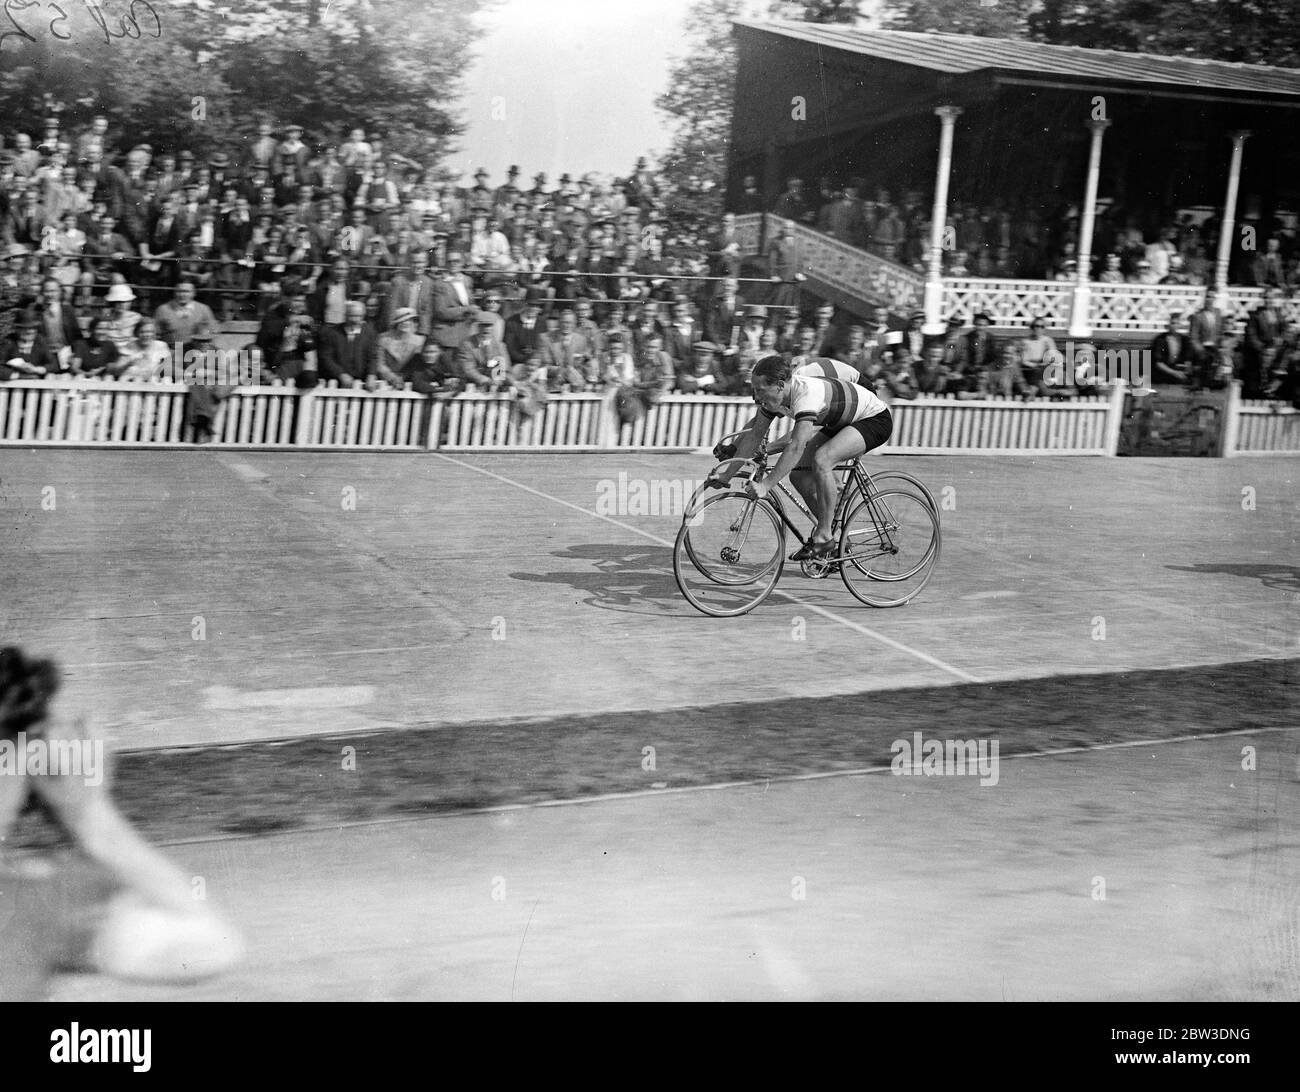 Toni Merkens d'Allemagne , le champion amateur de sprint . Toni Merkens ( caméra la plus proche ) bat D S Horne de Grande-Bretagne en fin de course à l'invitation sprint à la rencontre des champions , Herne Hill Track , Londres . 7 septembre 1935 Banque D'Images